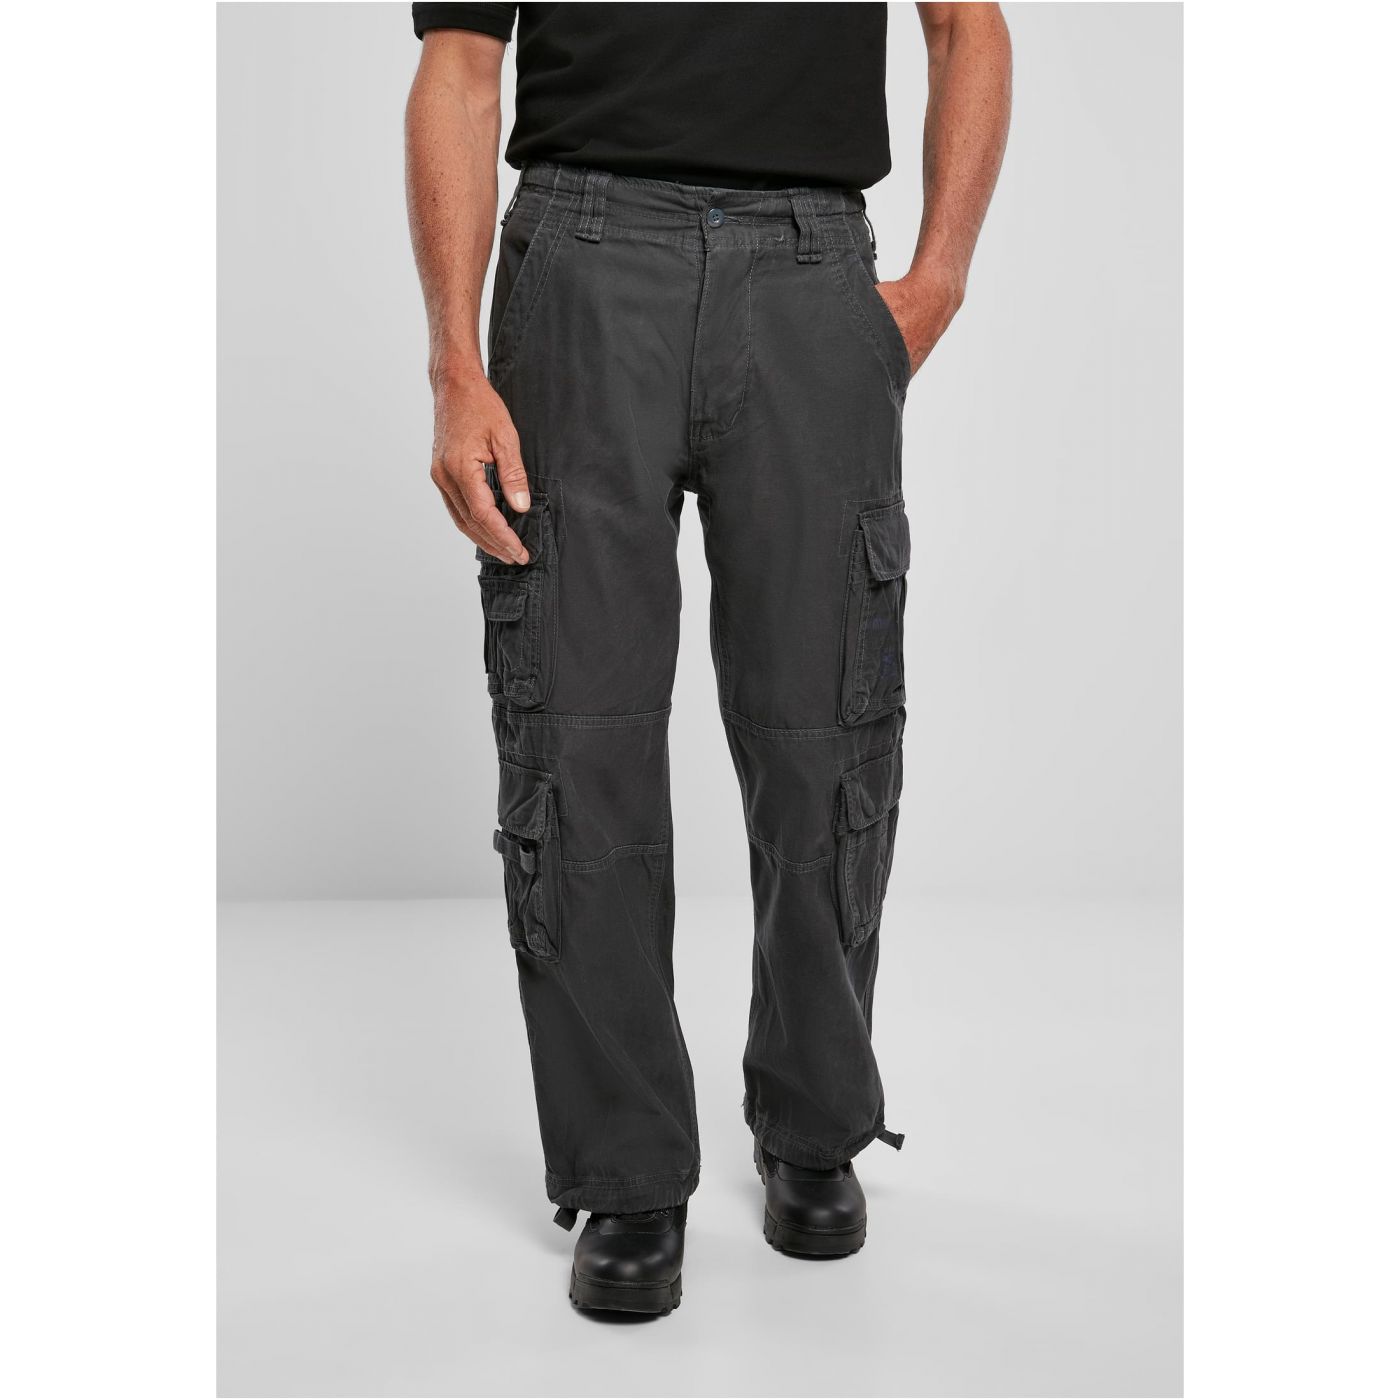 Levně Pánské kalhoty Vintage Cargo Pants - šedé